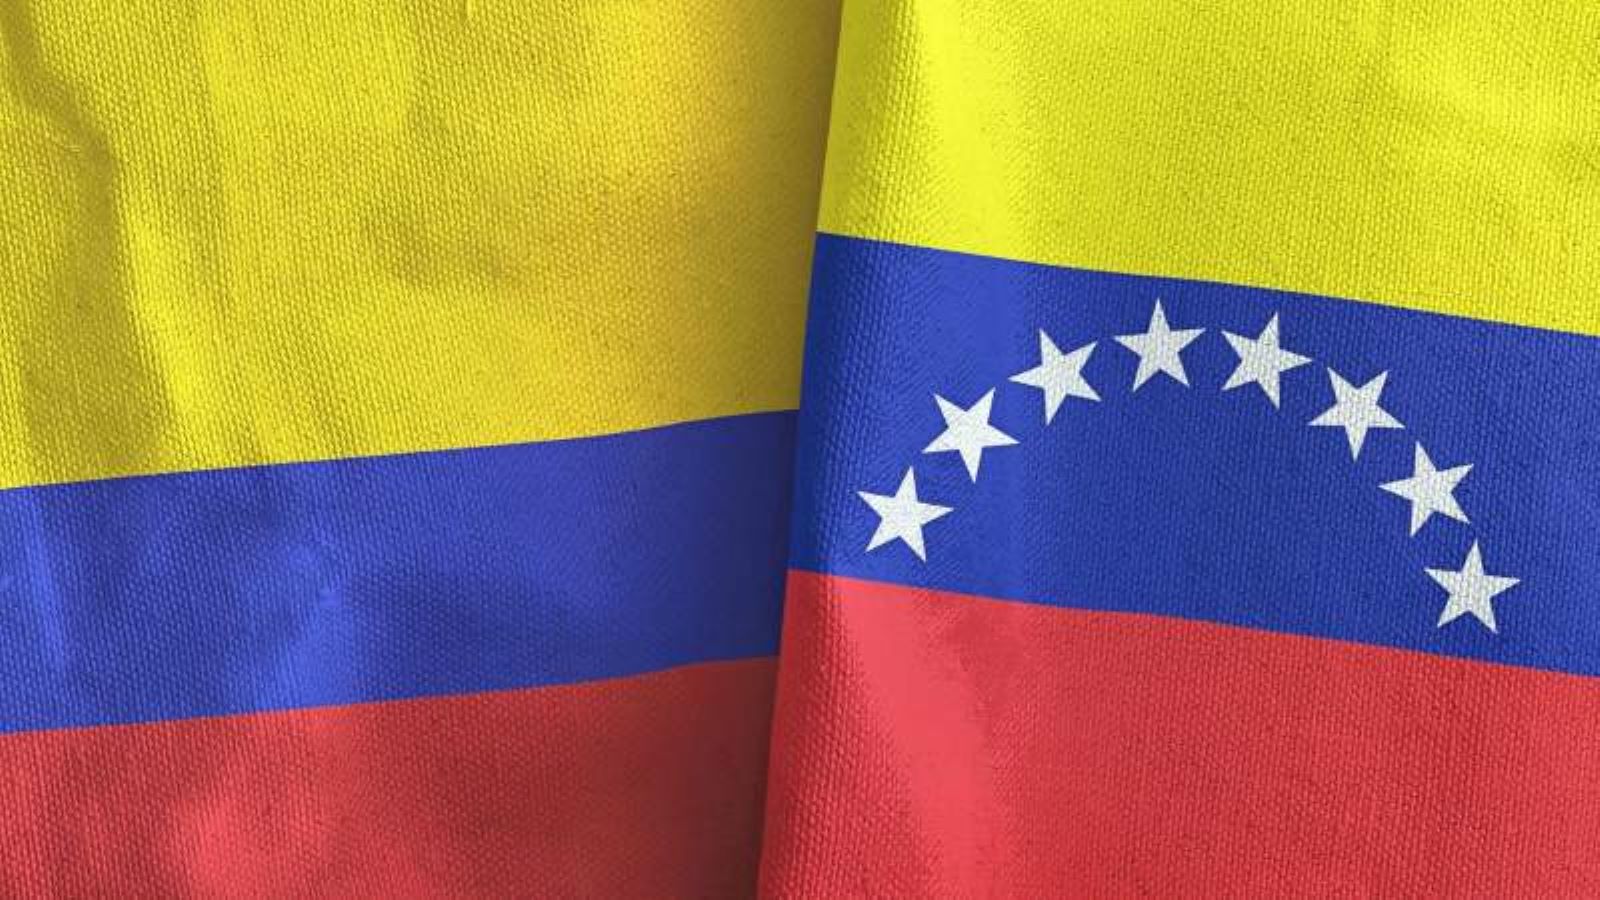 رئيسا كولومبيا وفنزويلا يلتقيان للمرة الأولى منذ قطع العلاقات بين البلدين